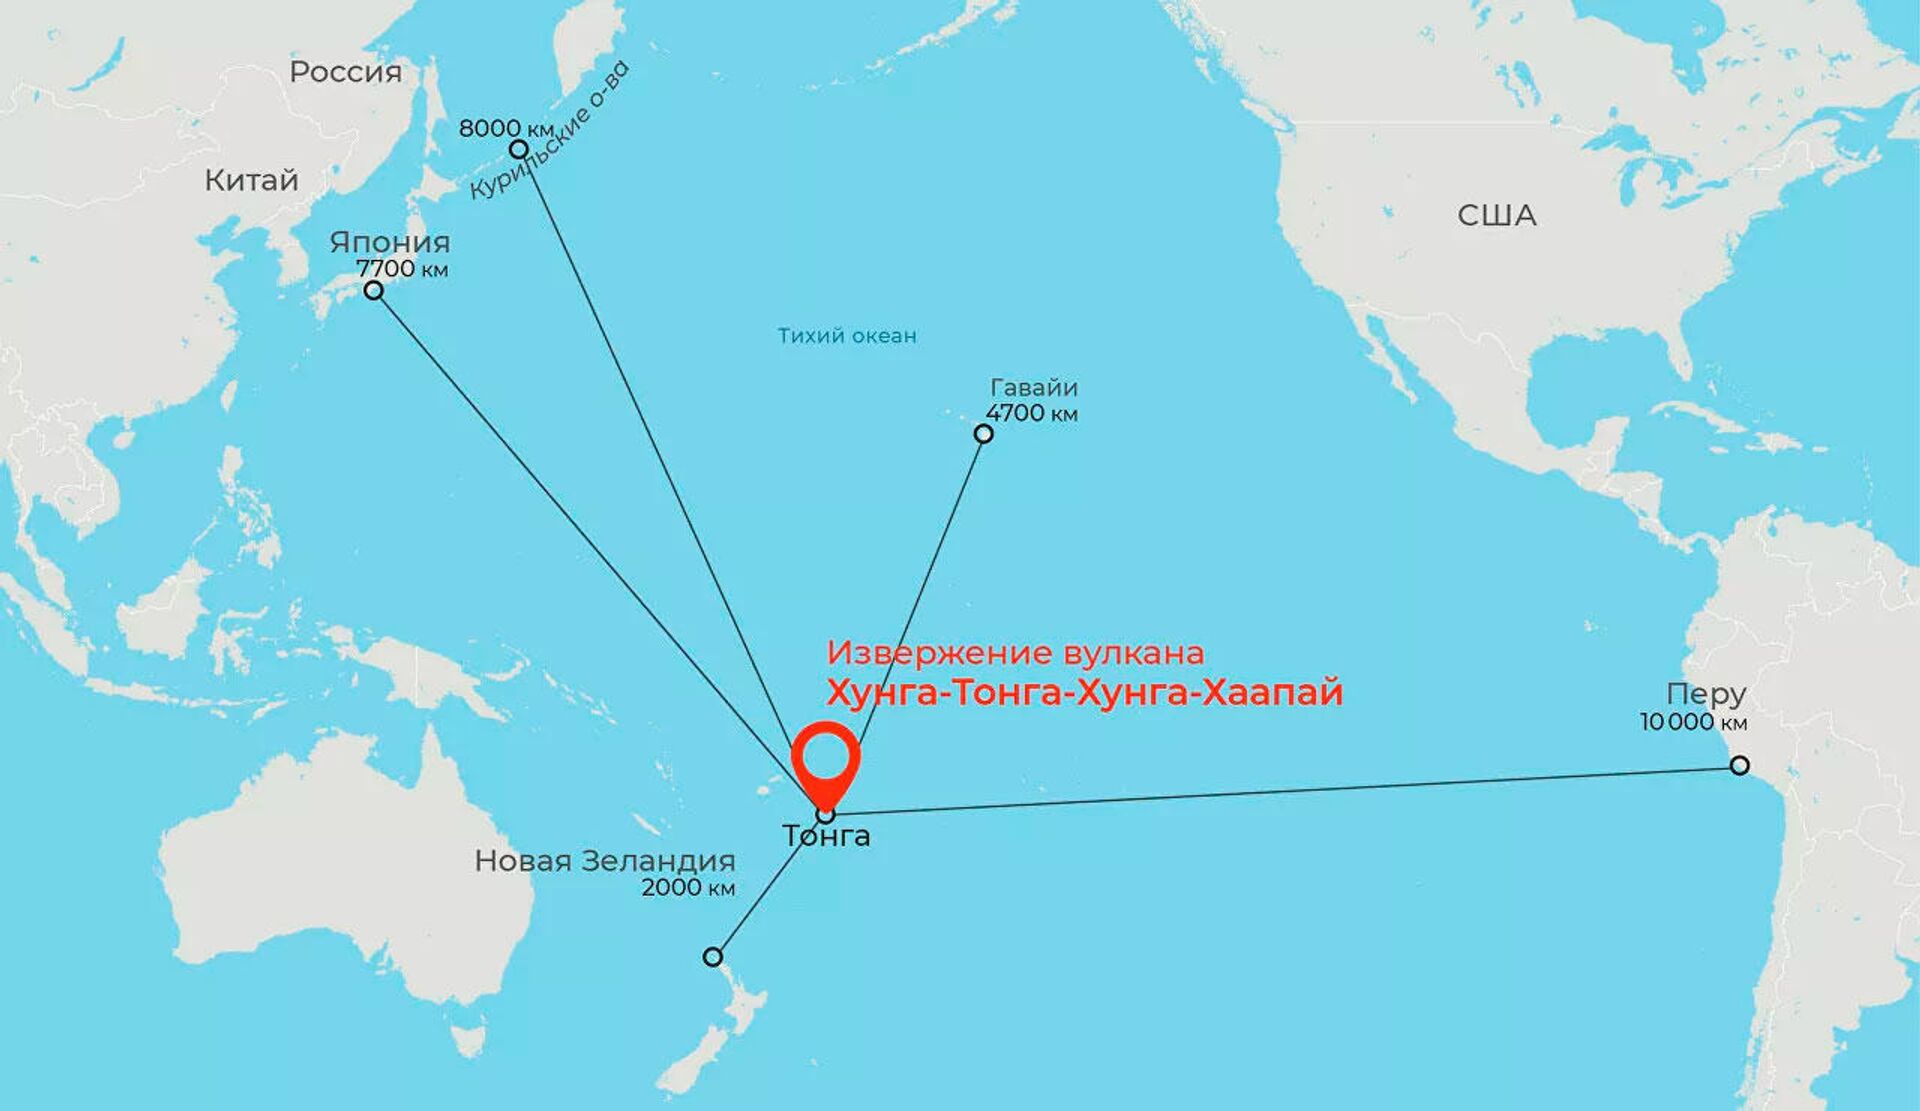 Место извержения подводного вулкана Хунга-Тонга-Хунга-Хаапай и расстояния до мест, где зафиксировали связанное с ним цунами - Sputnik Latvija, 1920, 23.01.2022